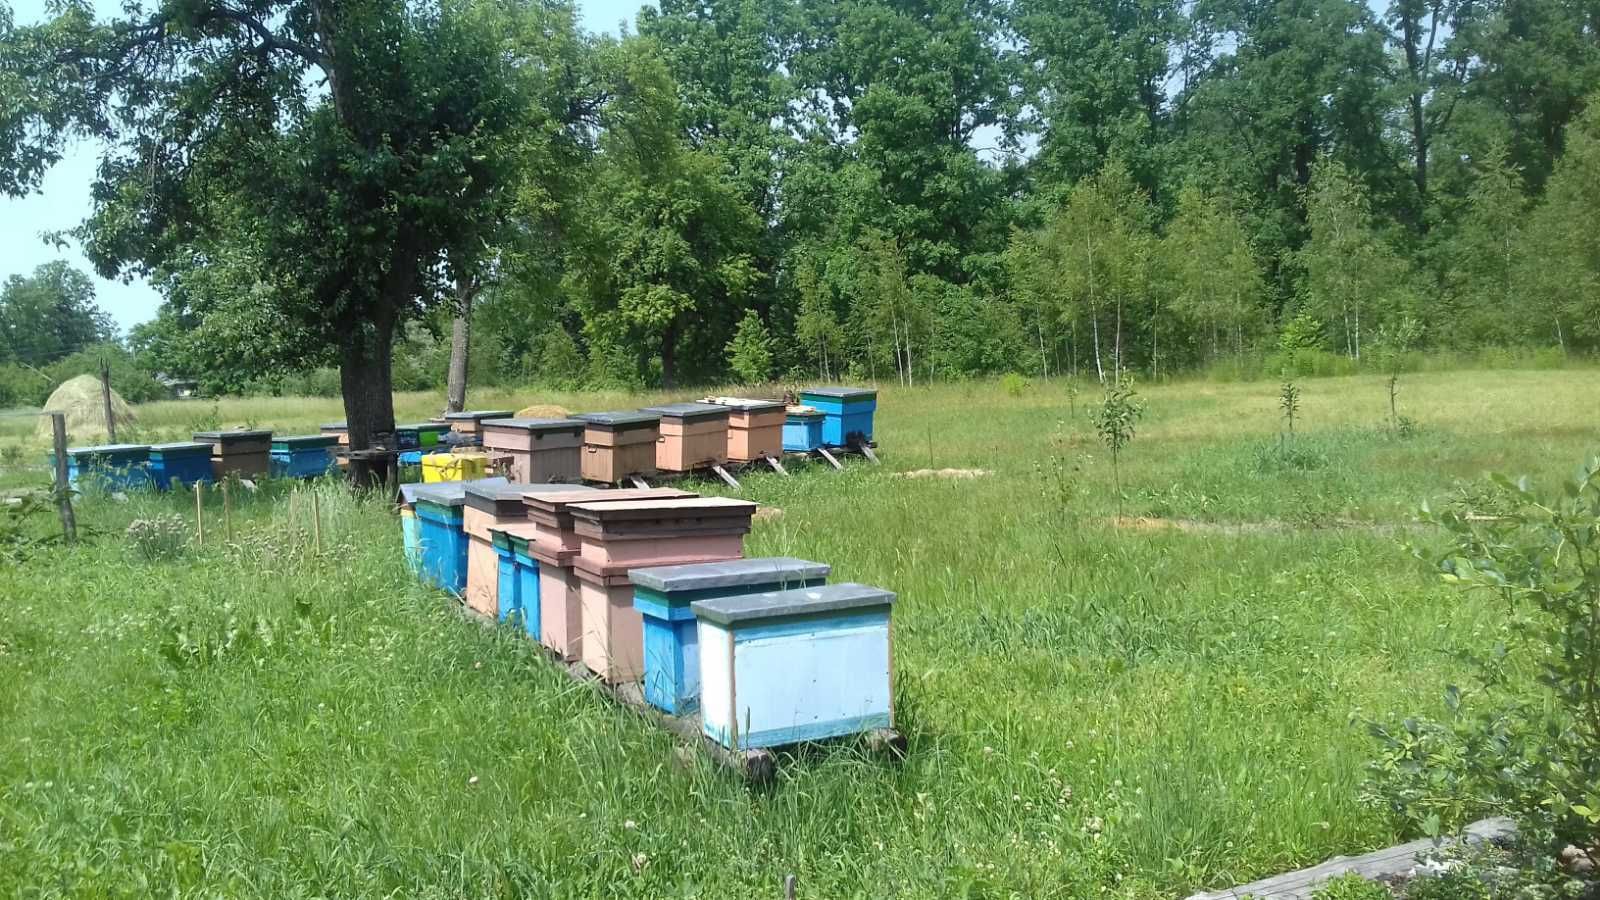 продам бджолосімї з вуликом і без на висадку